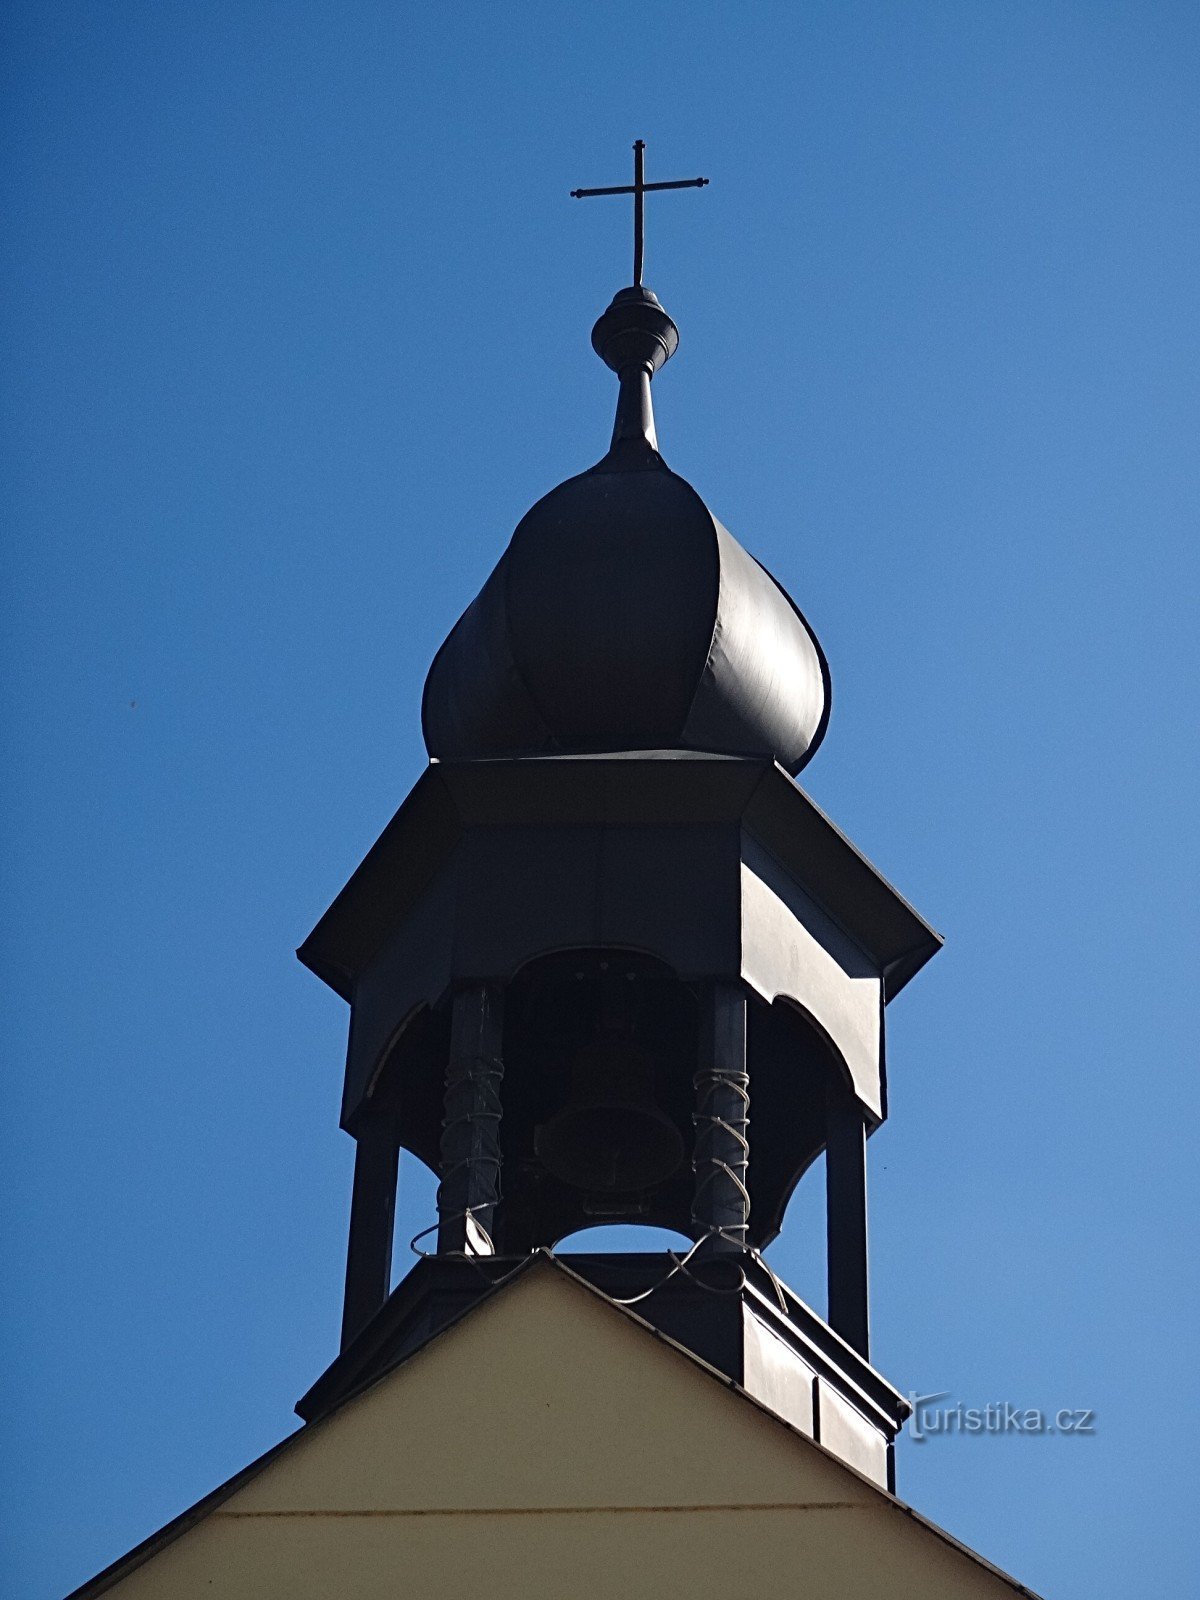 教堂塔楼内的 Věřňovice 钟楼